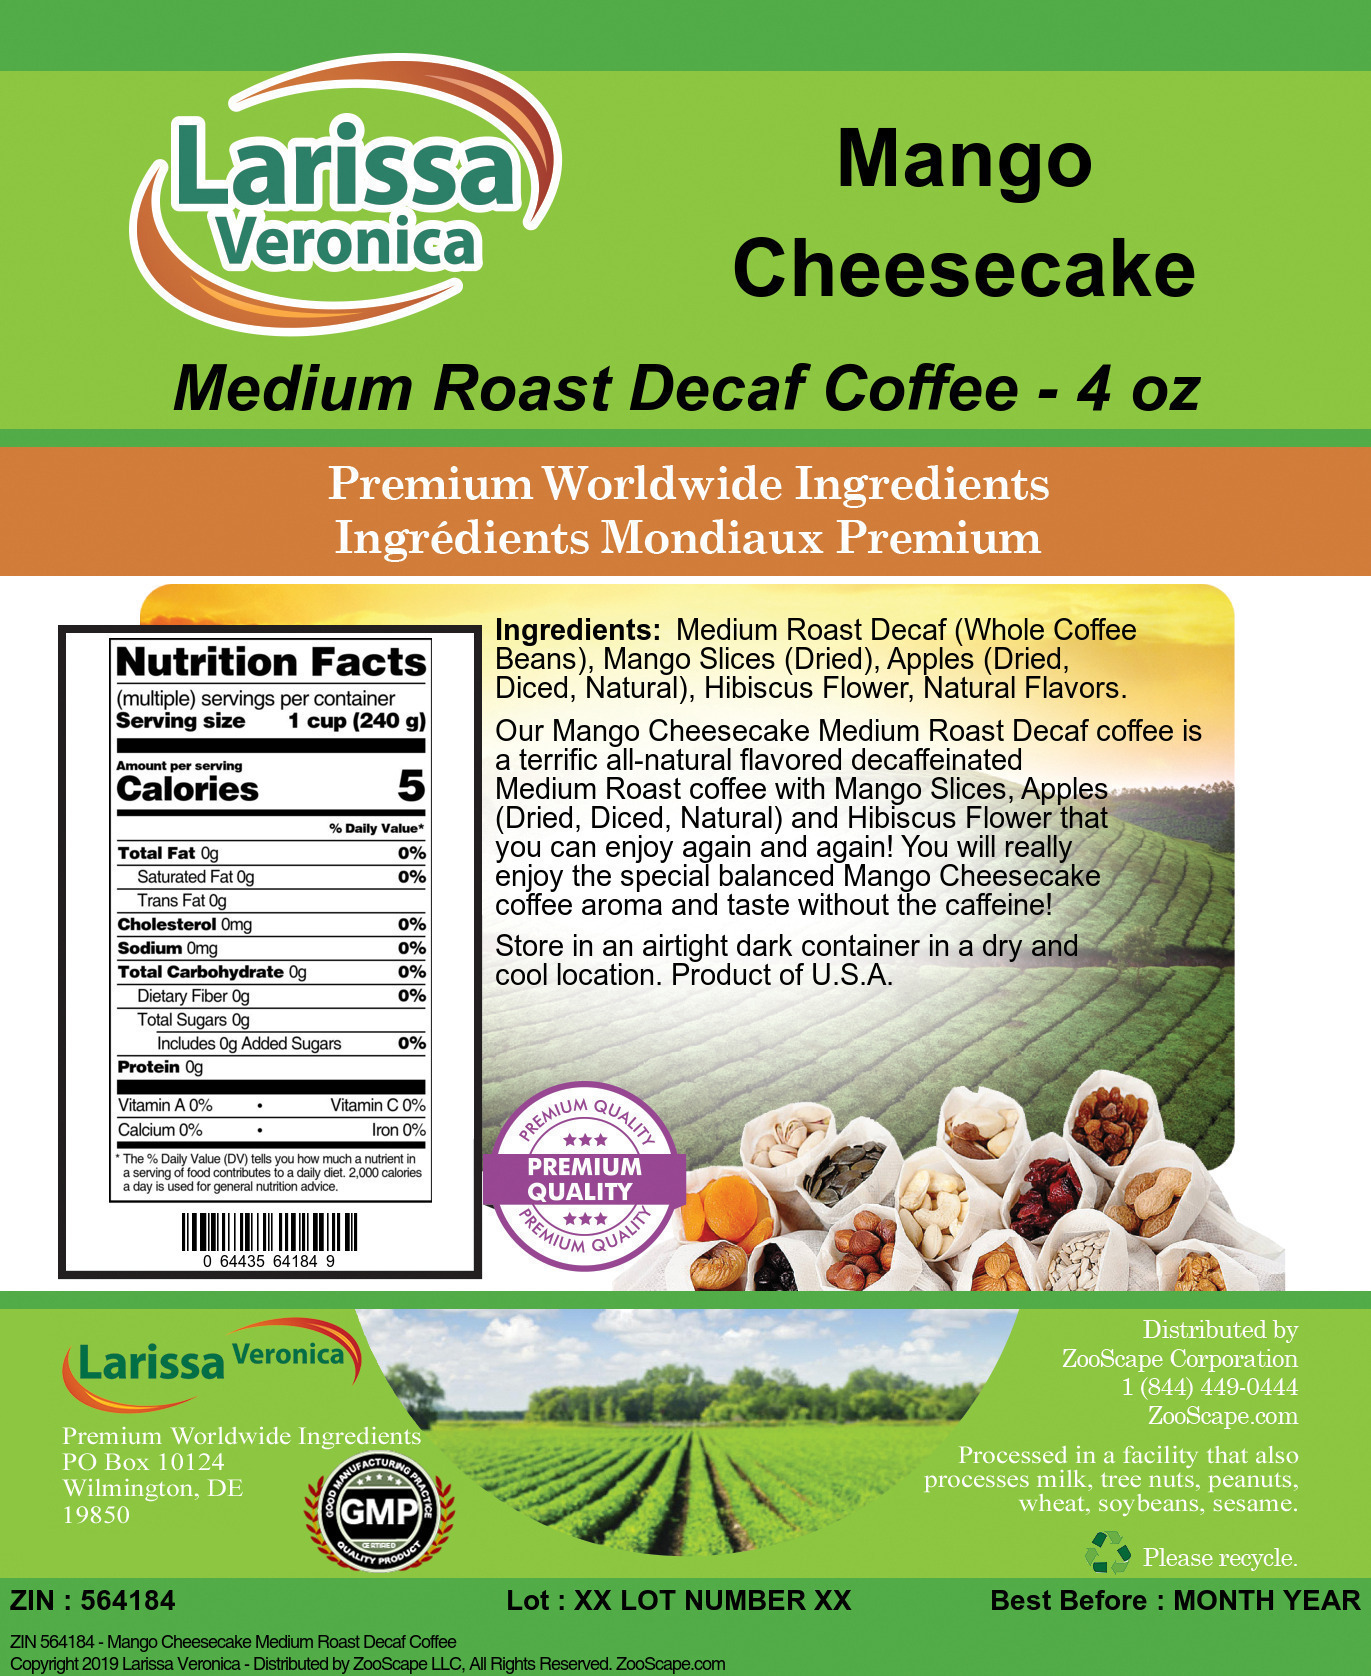 Mango Cheesecake Medium Roast Decaf Coffee - Label